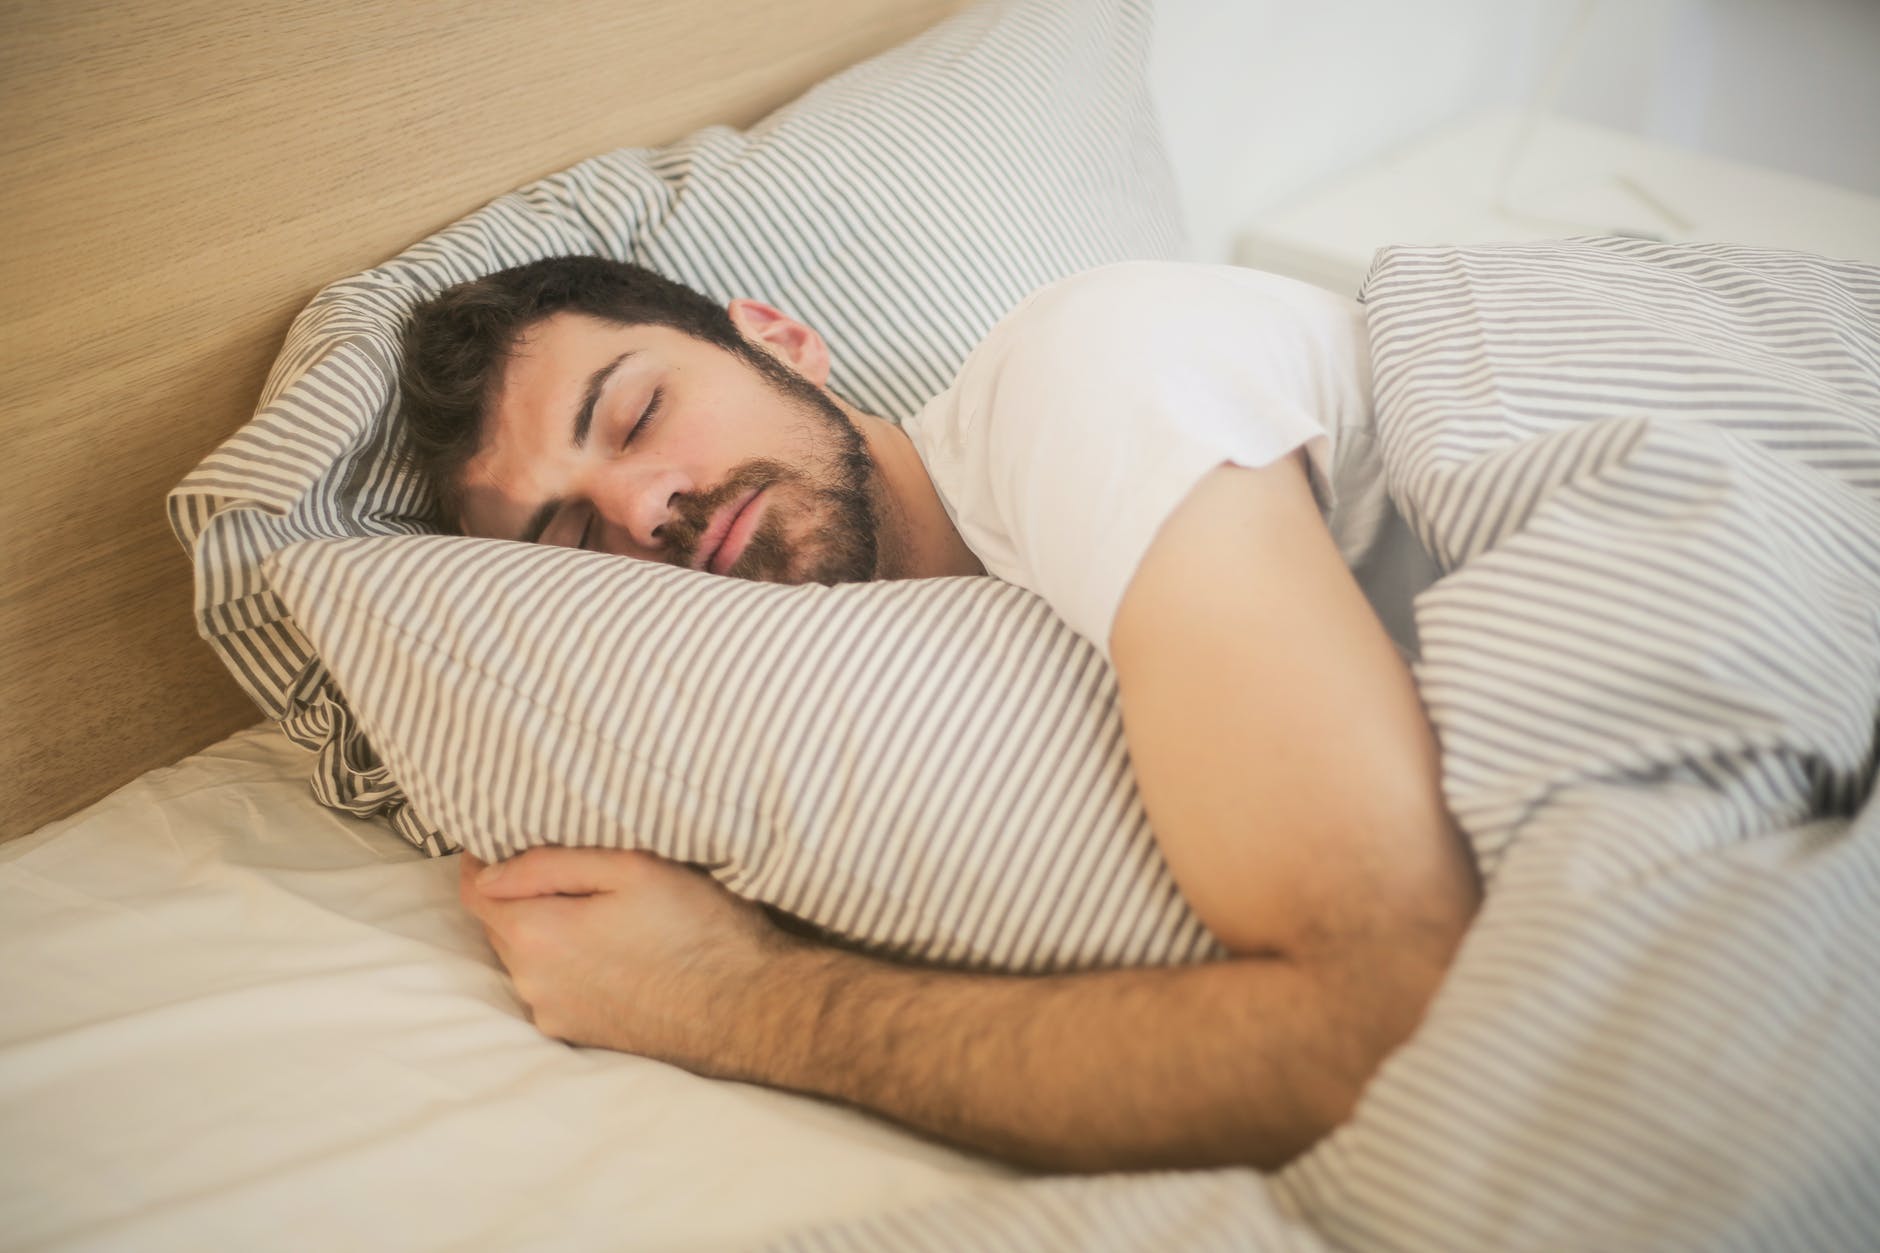 Тихий час: сомнолог рассказал о правилах дневного сна